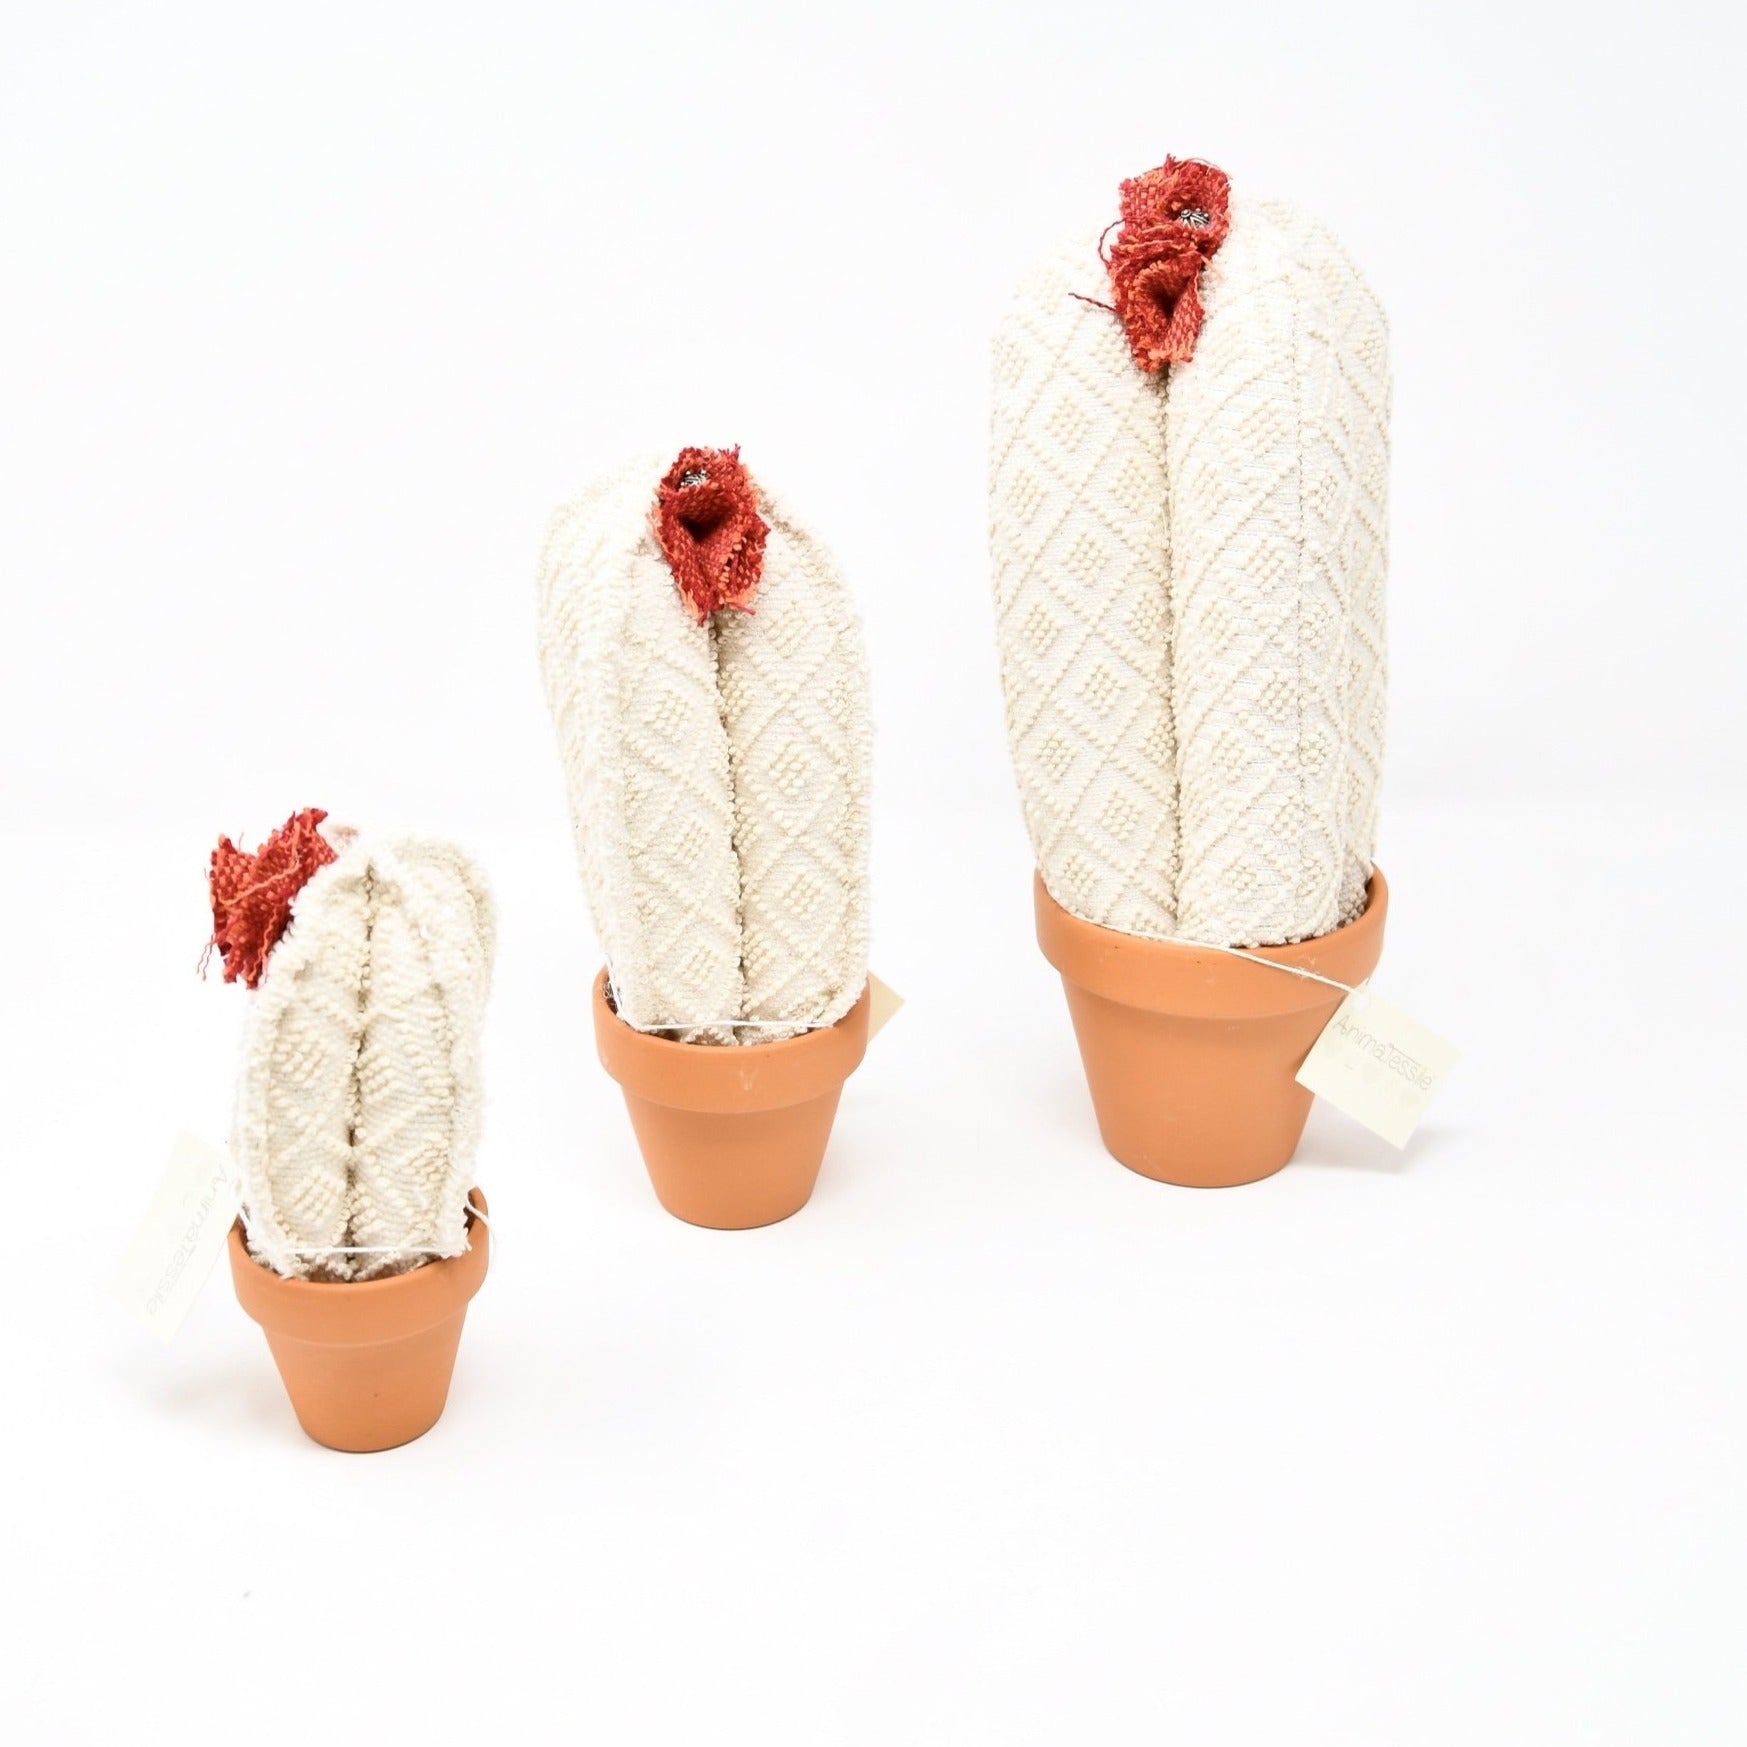 Cactus in cream fabric